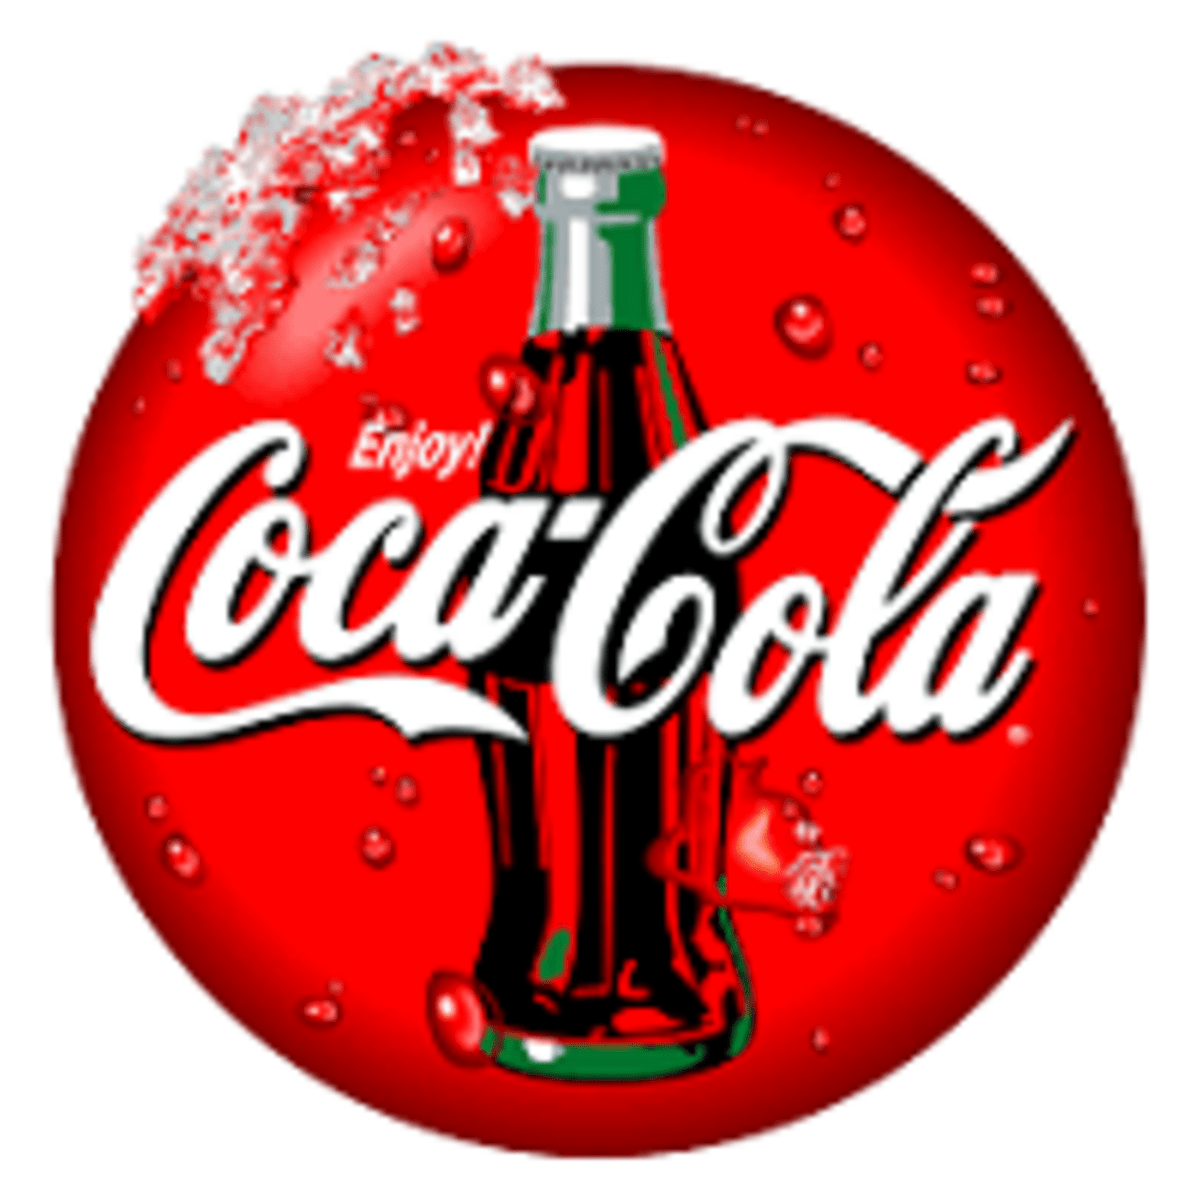 New Jobs at Coca Cola Kwanza Tanzania 2022,Stores Assistant at Coca-Cola Kwanza Tanzania 2022, Nafasi za kazi Coca Cola Tanzania, coca-cola kwanza vacancies 2022, coca-cola kwanza website, store keeper jobs in tanzania 2022, coca-cola kwanza jobs, coca-cola jobs in tanzania